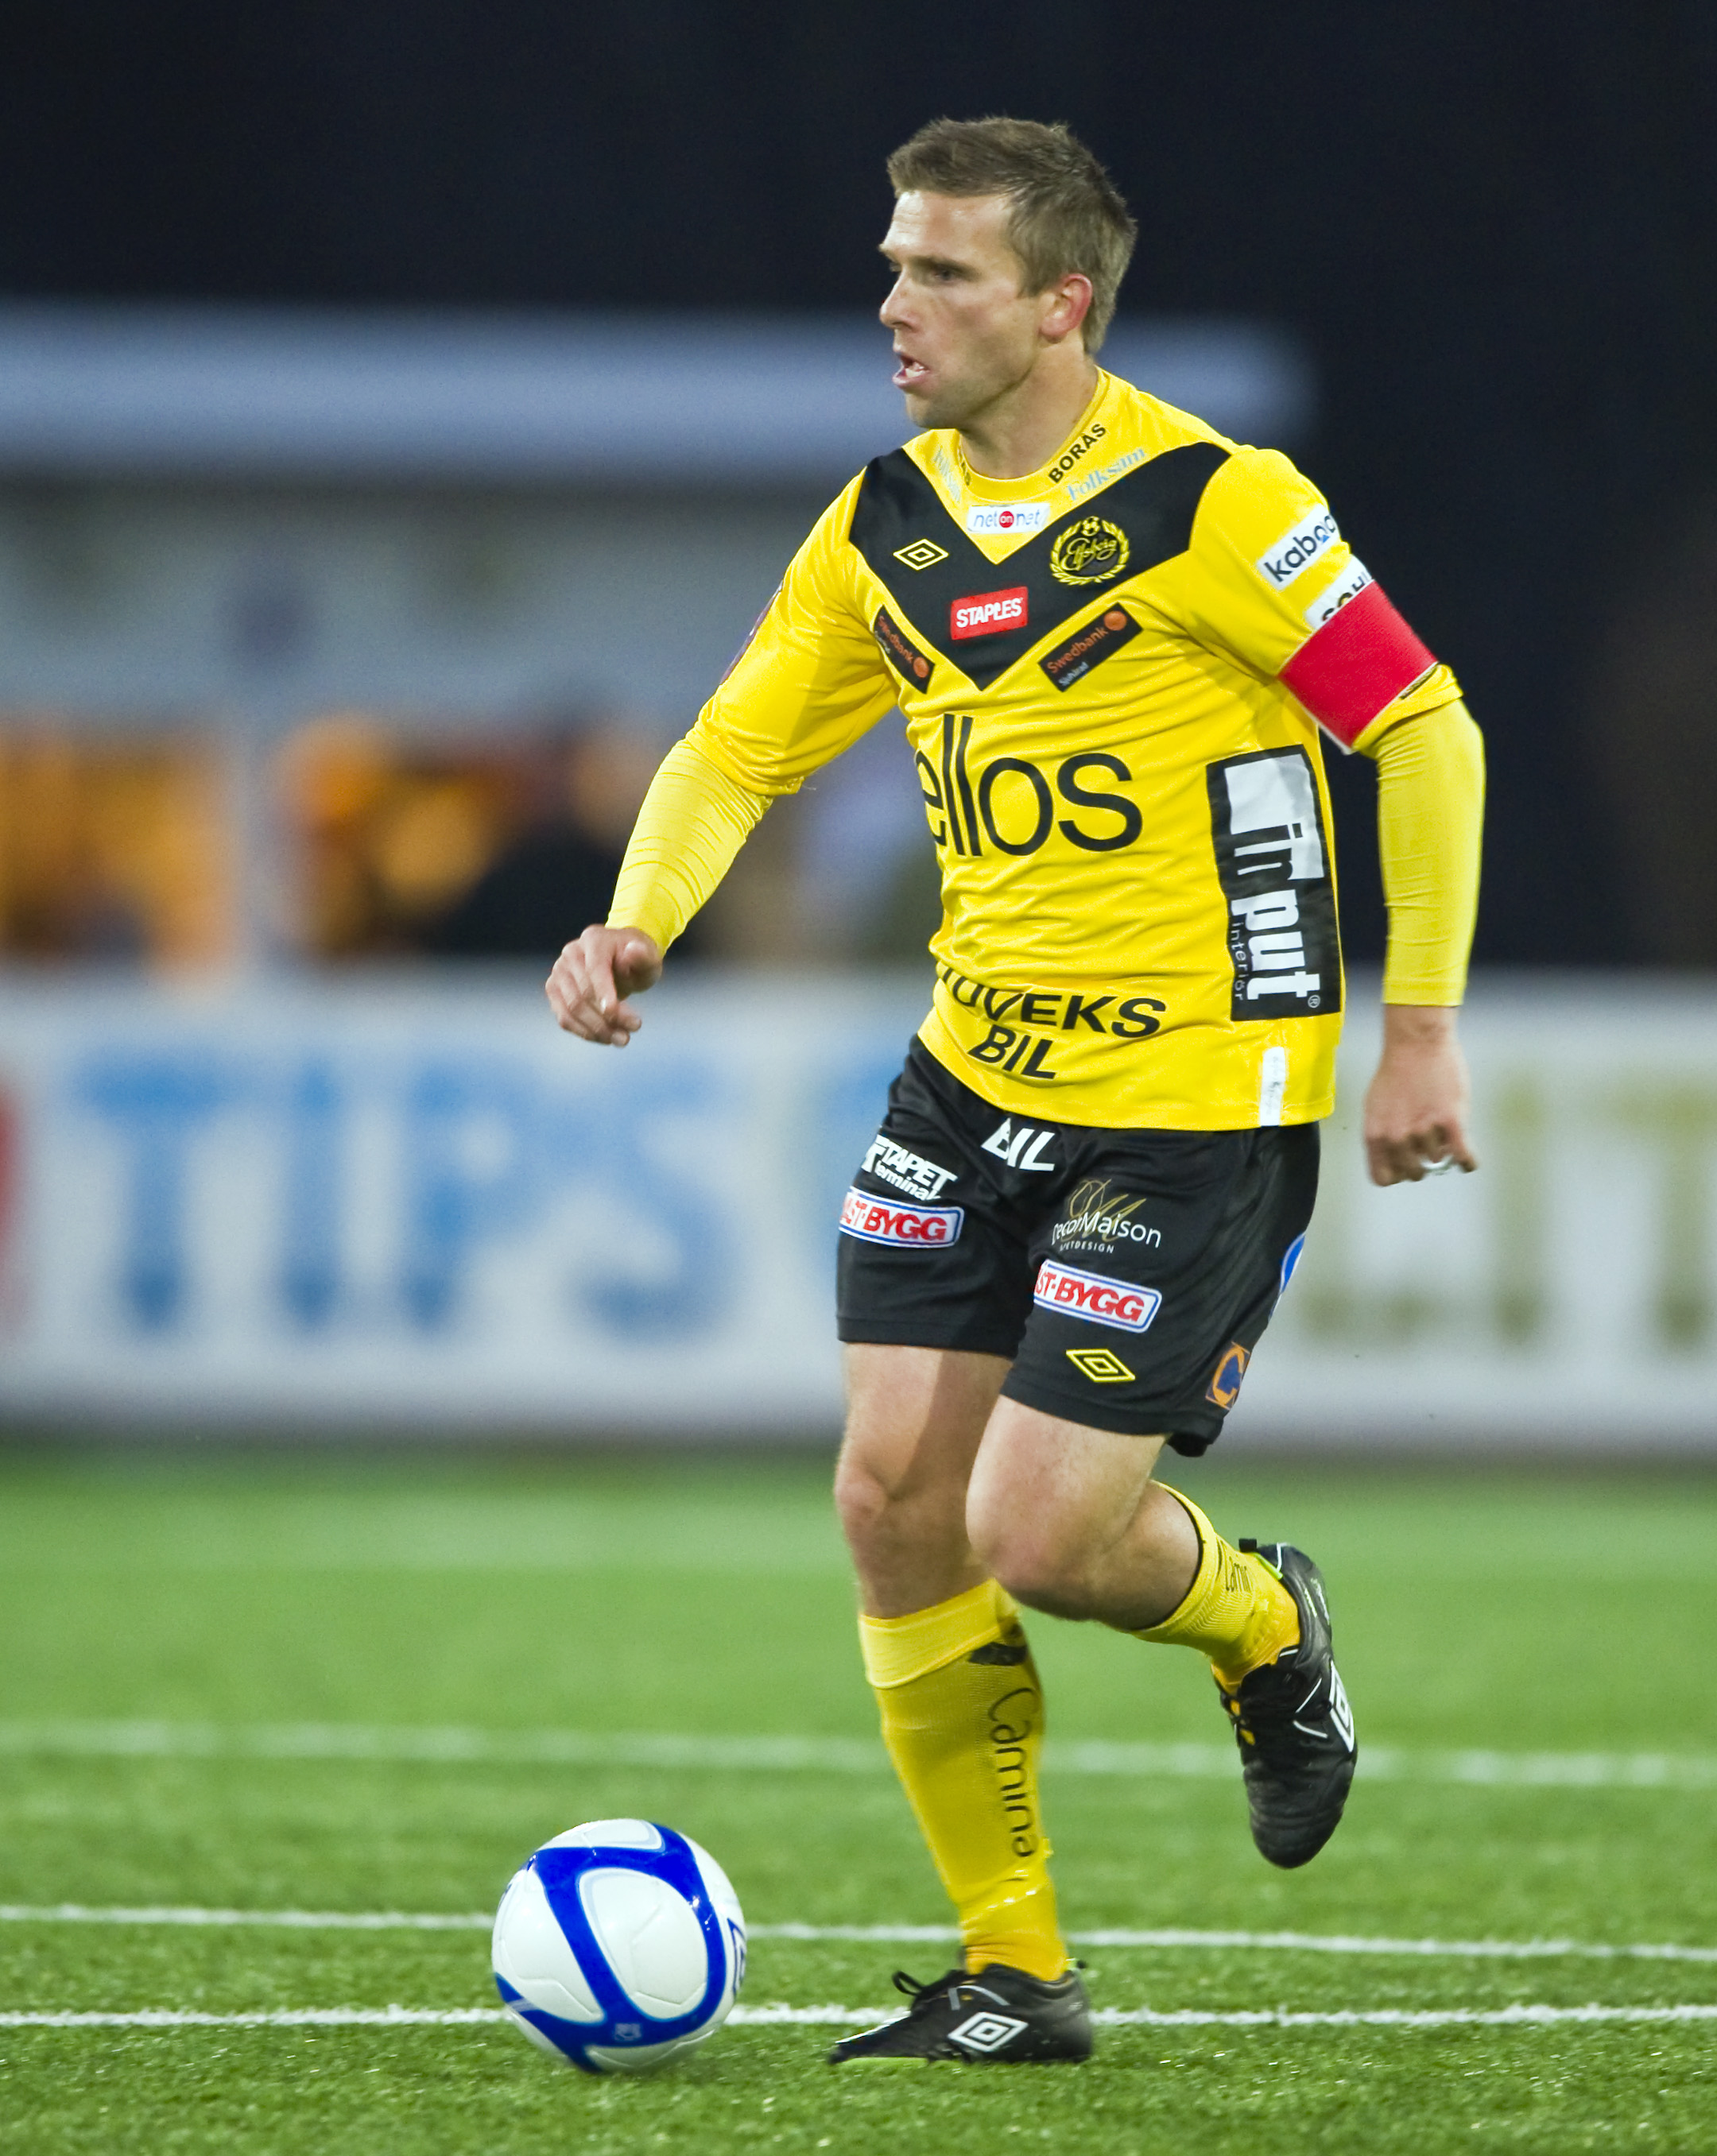 "Du kan sätta Anders Svensson i Gefle  så får du se och se hur dominant han är då".